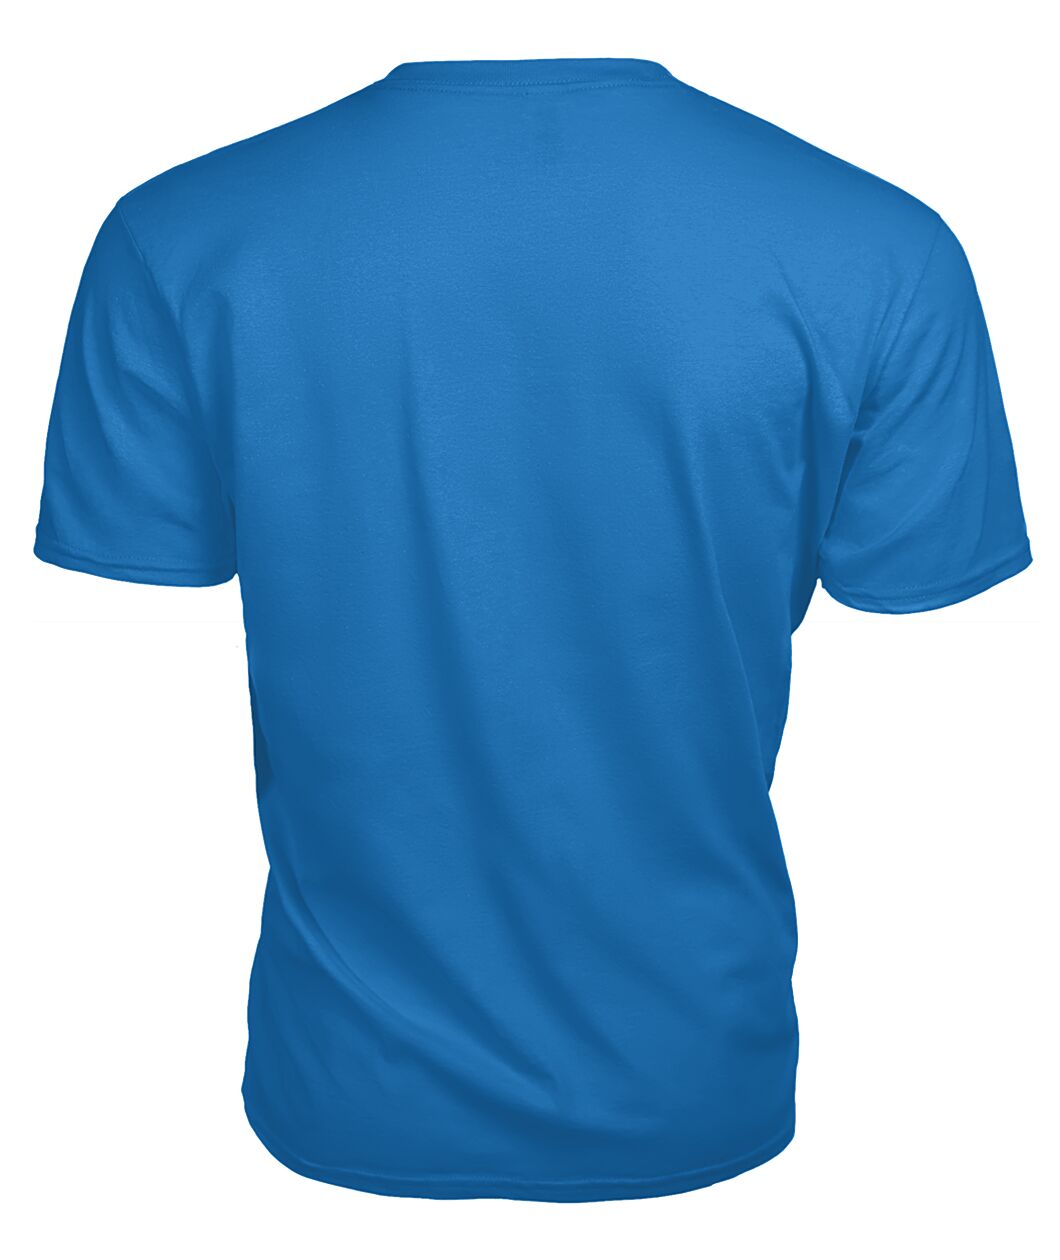 Bell Family Tartan - 2D T-shirt